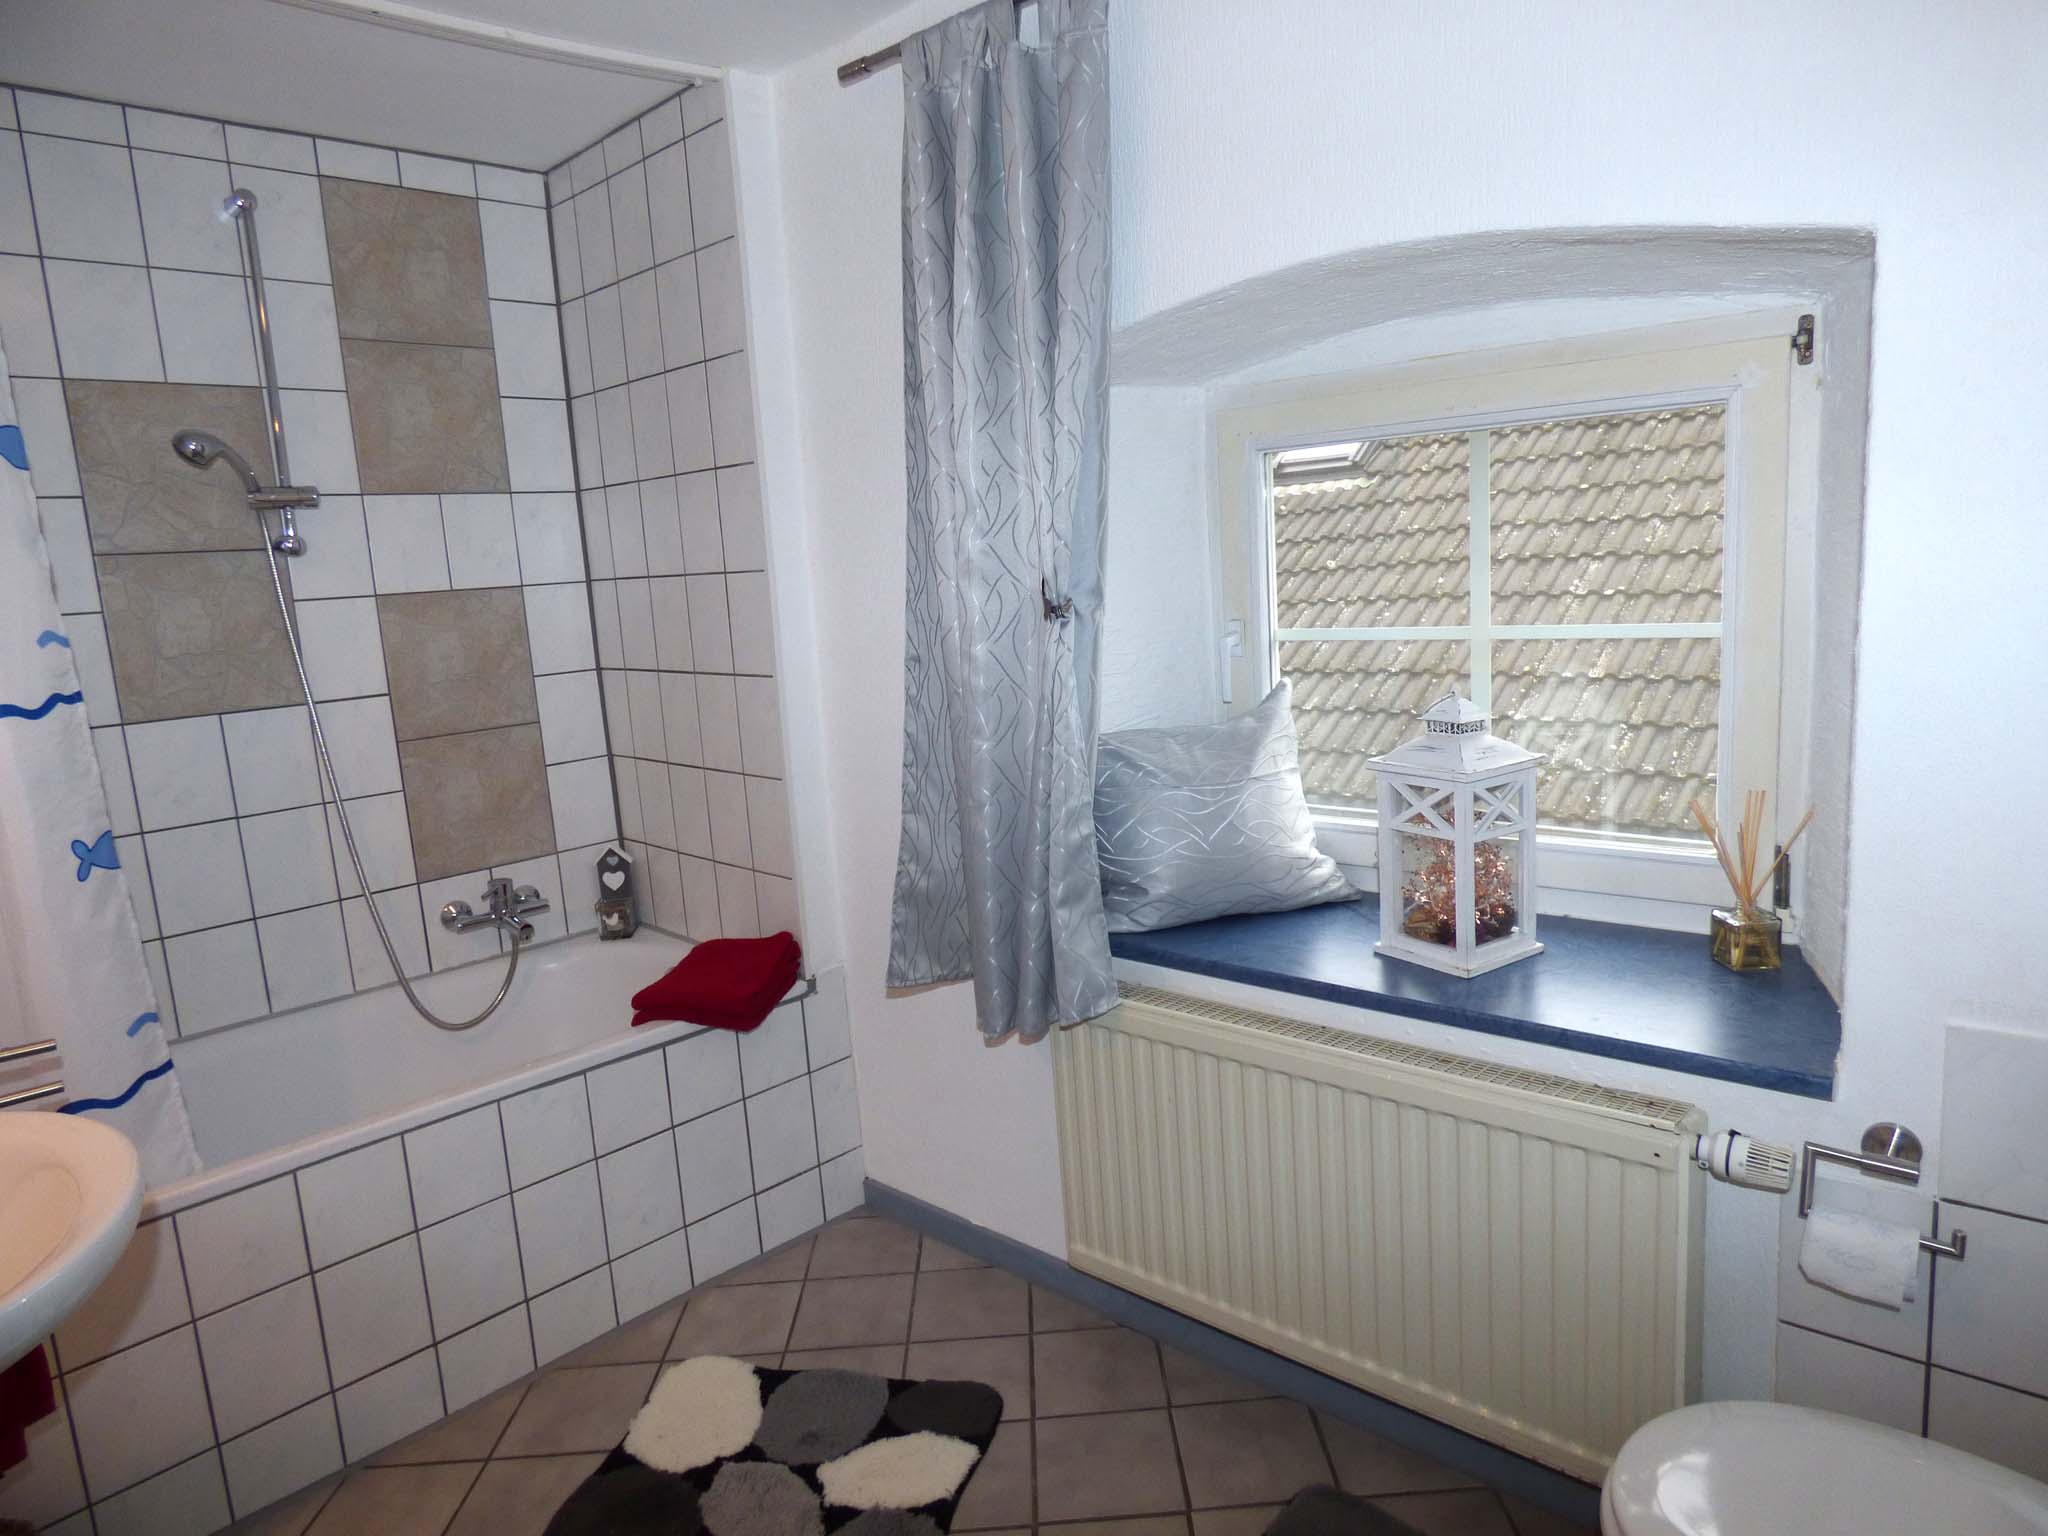 Badezimmer in Blankenheim Ahrhütte am Anfang des Ahrtals in der Eifel